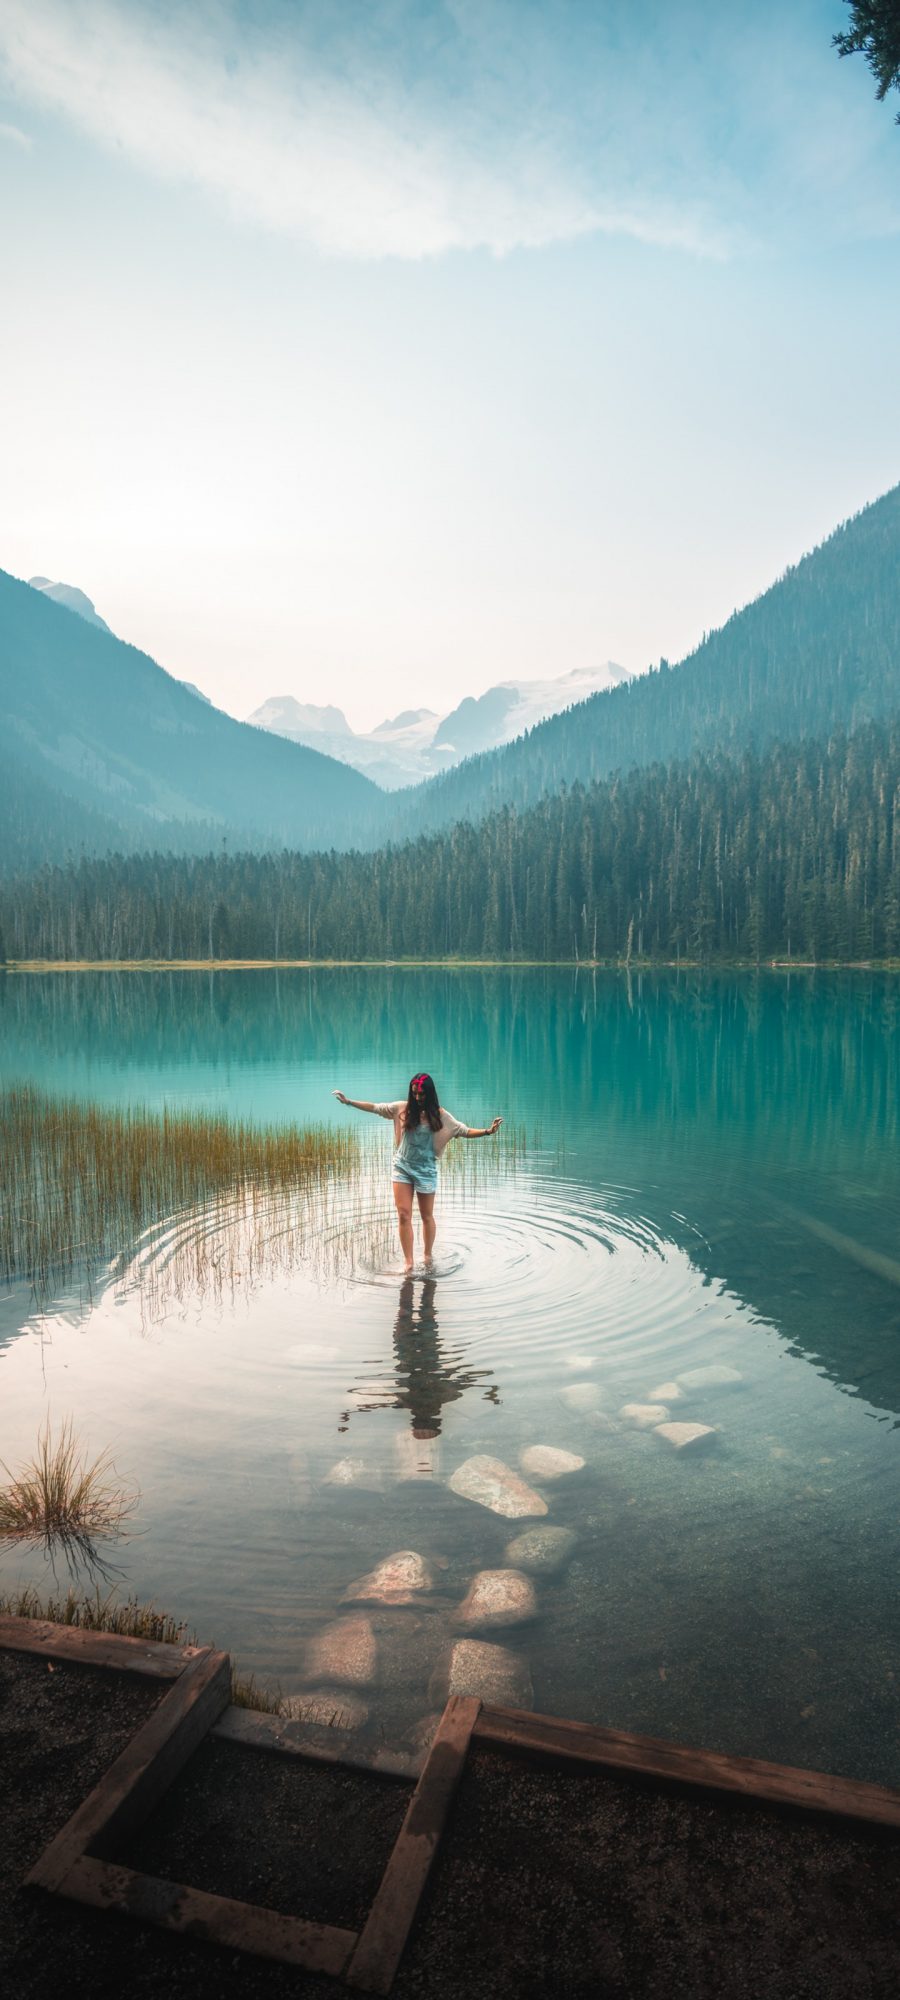 美女漫步在风景优美的湖水中 3200×1440